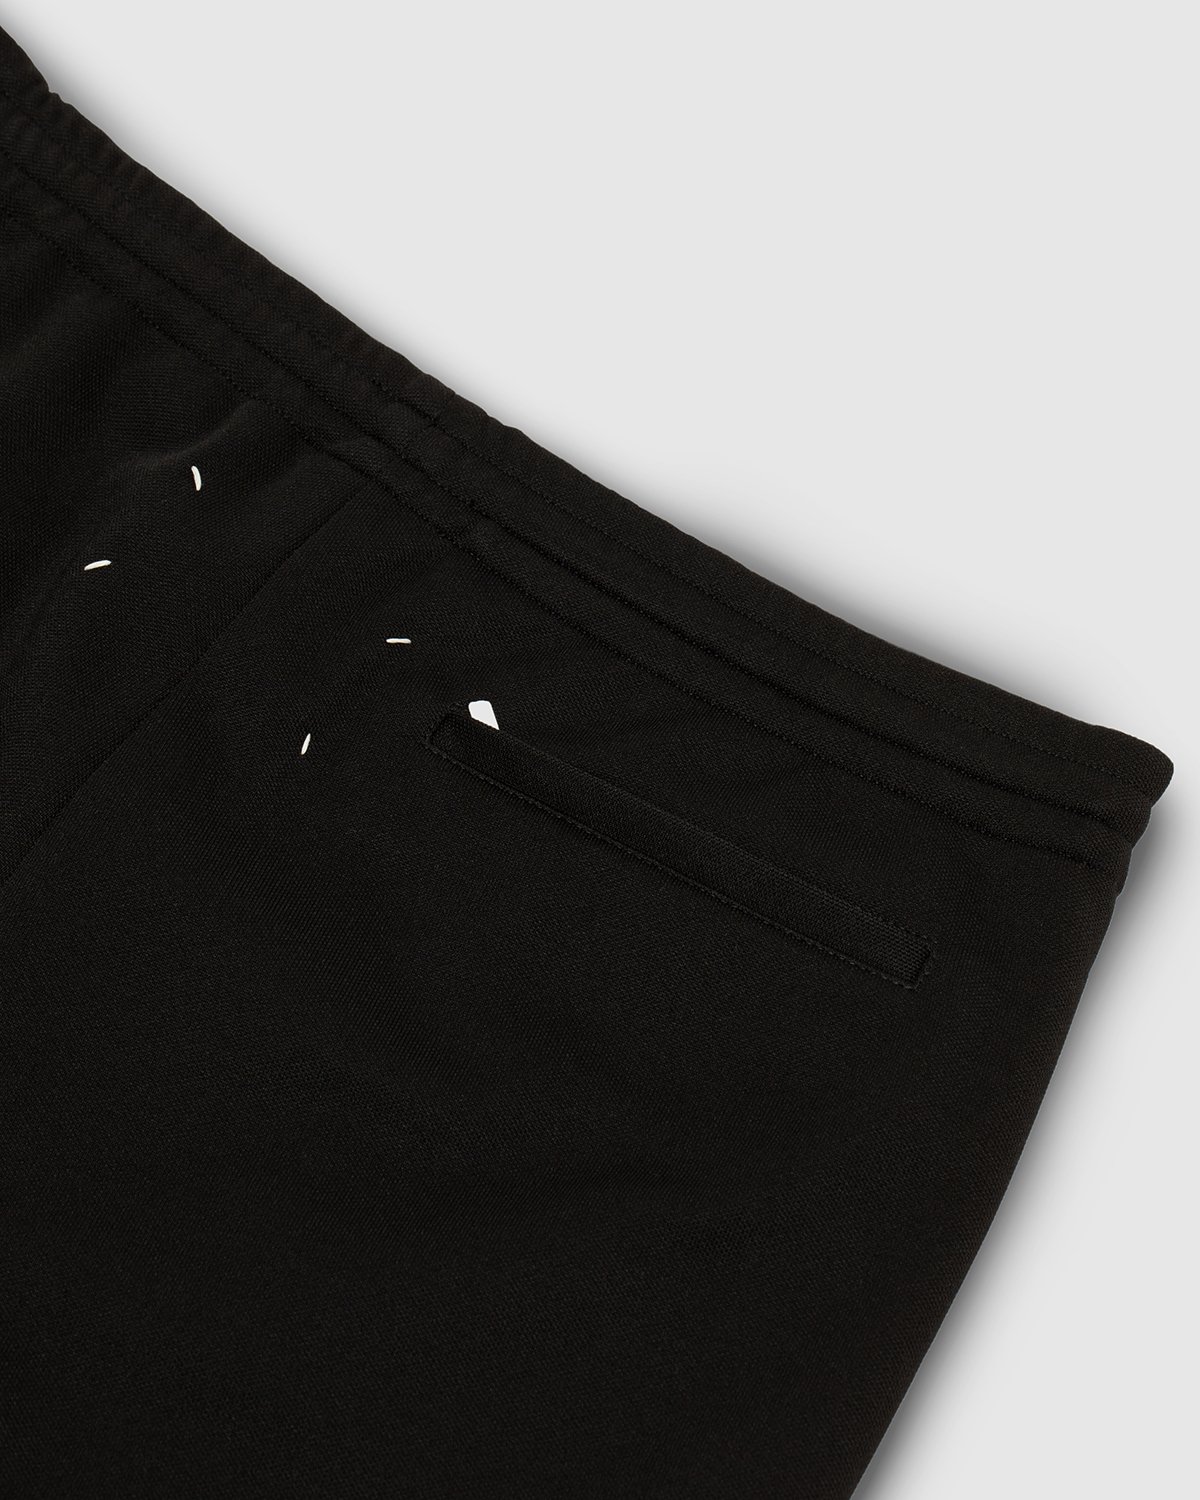 Maison Margiela - Track Pants - Clothing - Black - Image 4